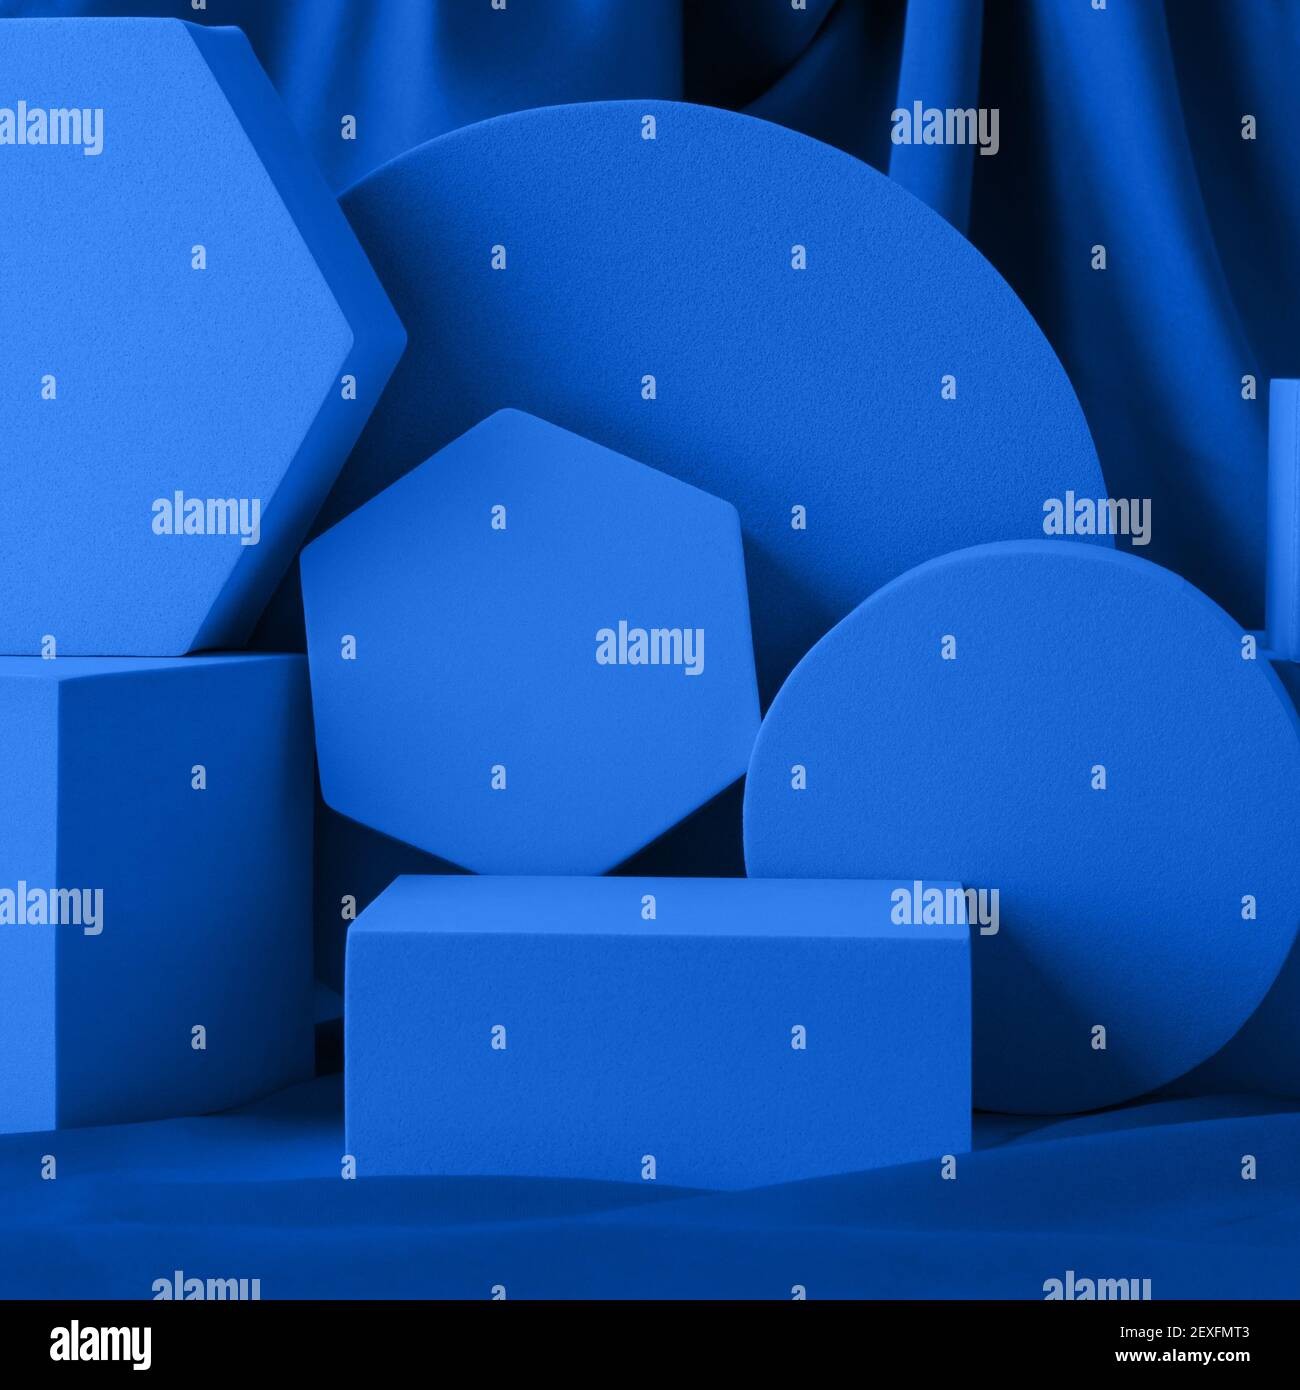 Formes géométriques, support bleu nuit, maquette de podium pour la présentation des produits sur fond de soie Banque D'Images